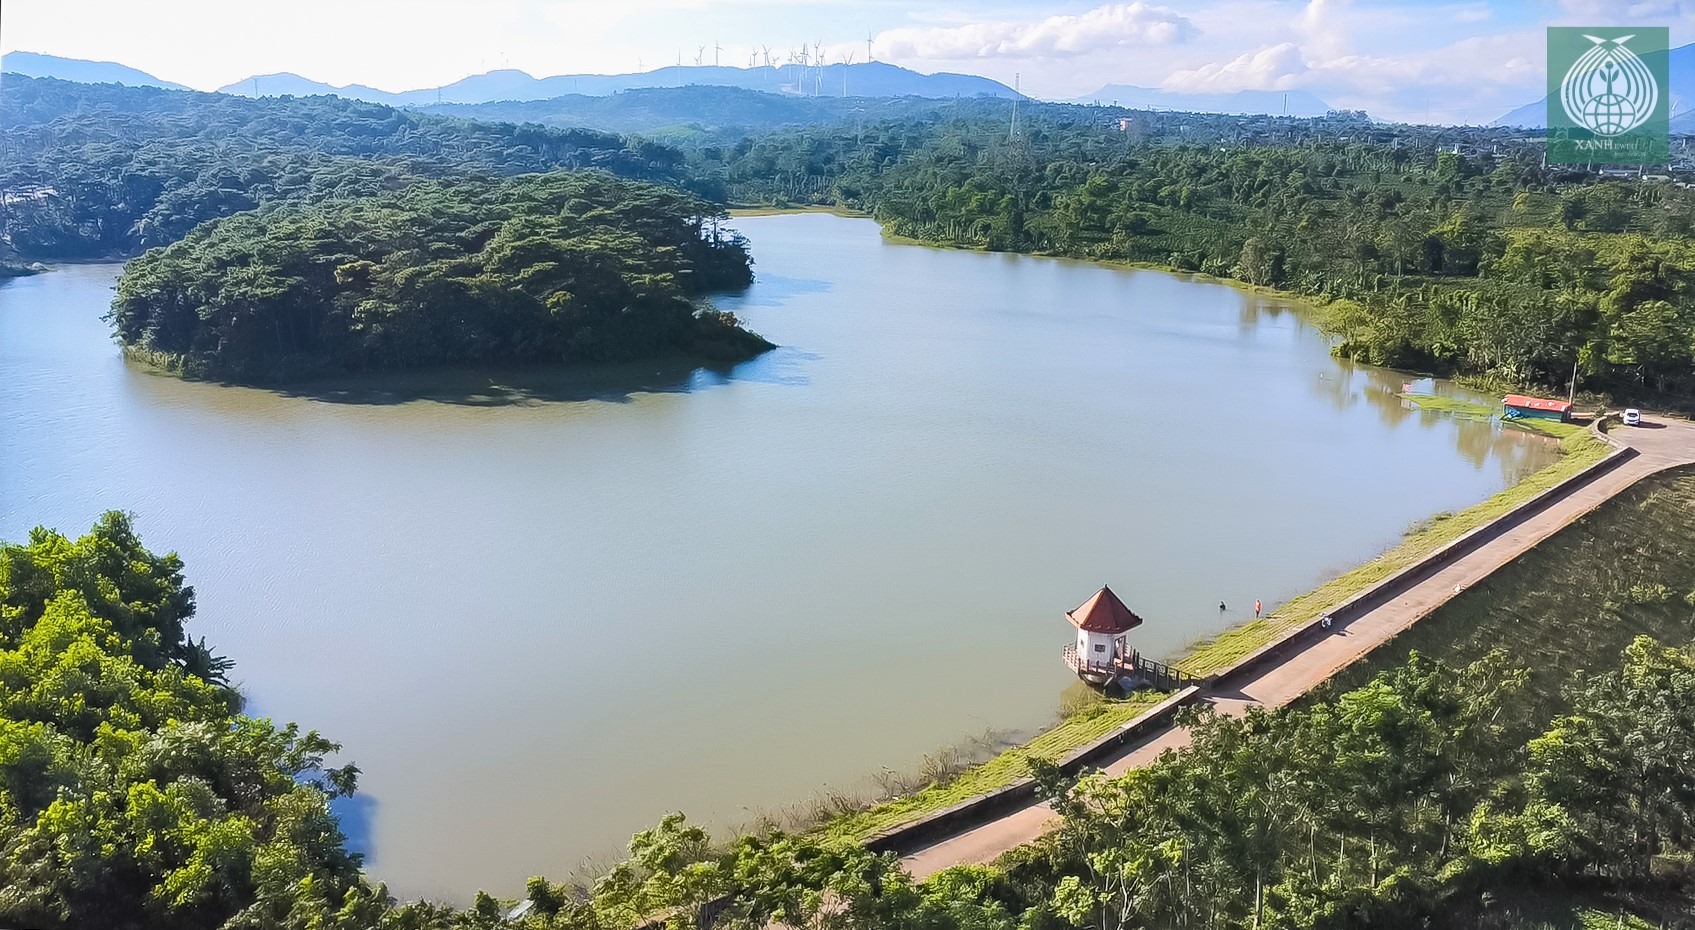 Hồ Tân Độ hay còn gọi là hồ Huyện tại thị trấn Khe Sanh, nơi có tiềm năng lớn để phát triển du lịch.